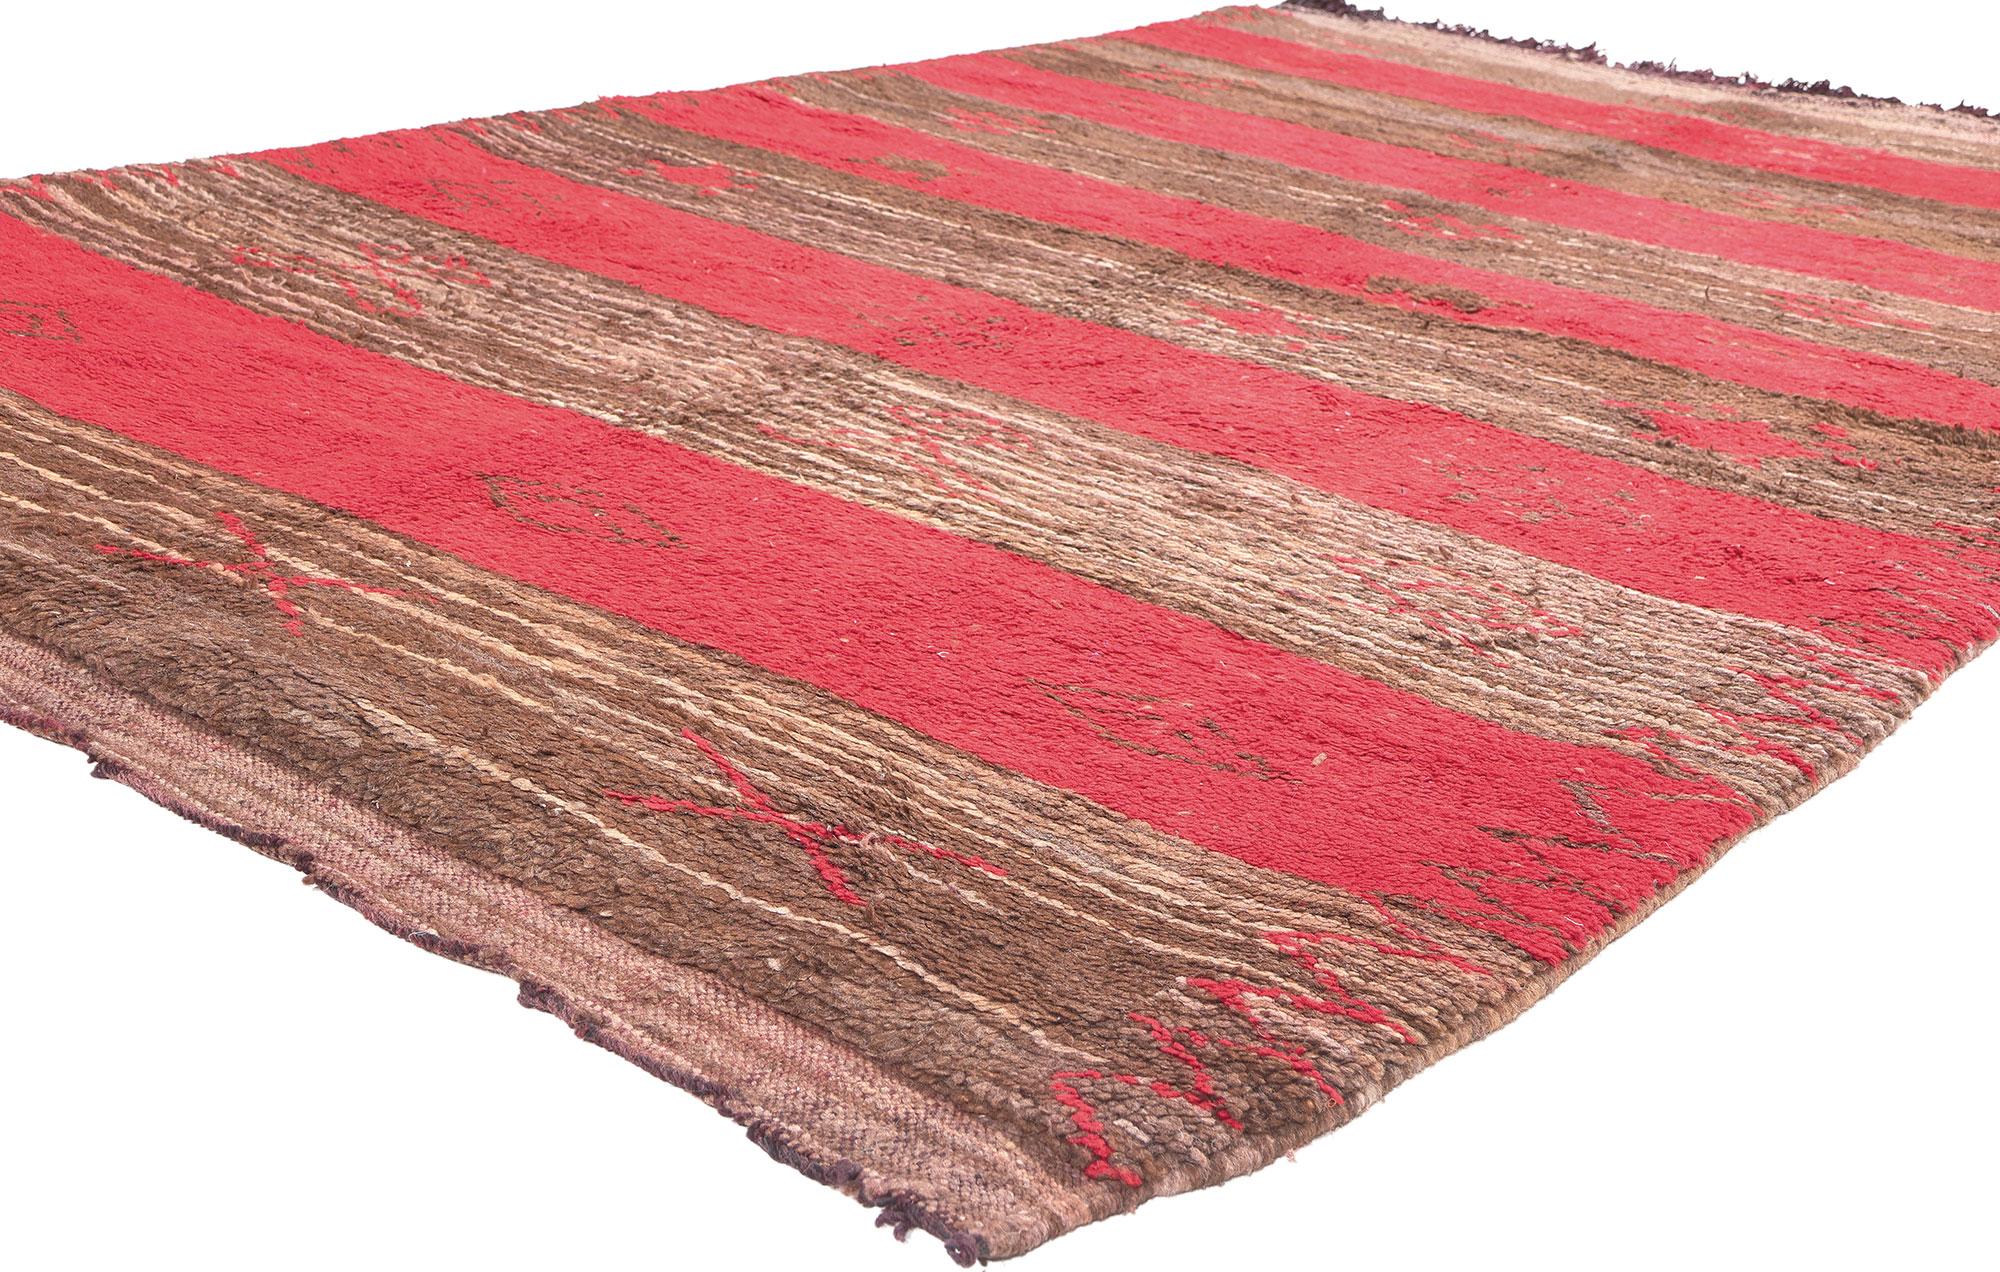 20396 Tapis marocain rayé vintage, 05'04 x 08'01. 

Ce tapis marocain vintage en laine nouée à la main est un témoignage moelleux de la beauté du tissage qui ajoute une couche de chaleur à presque tous les espaces. Le design tribal rayé et la